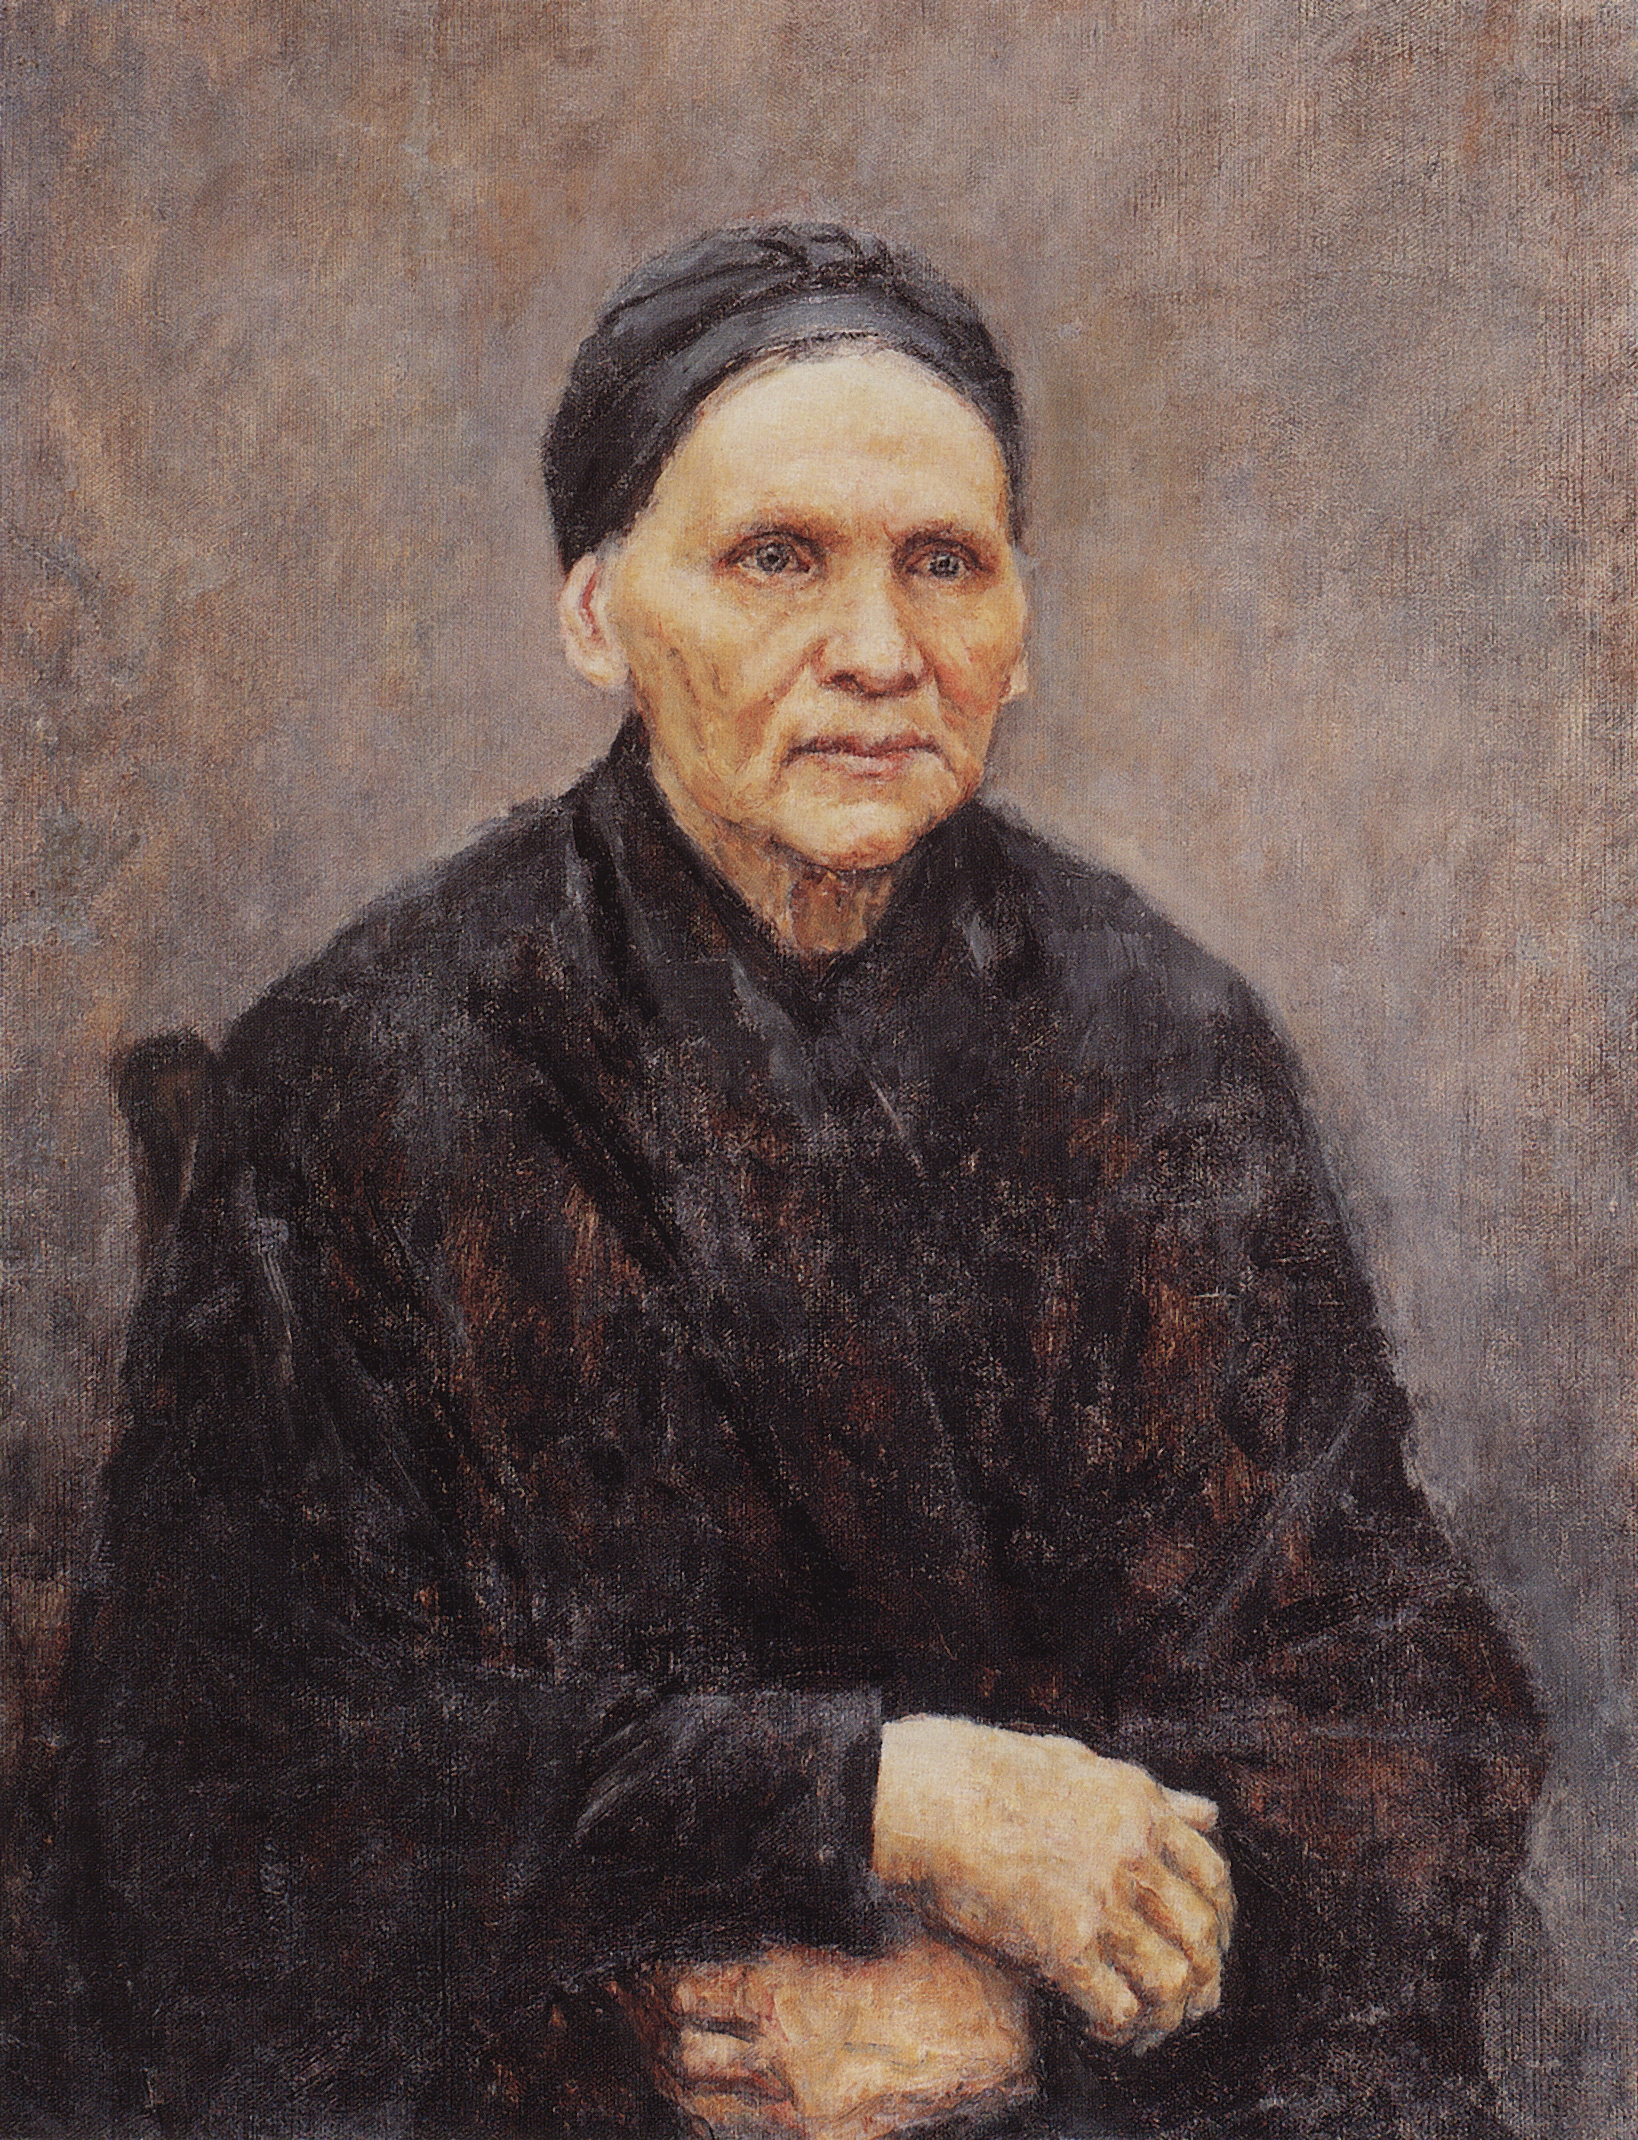 Суриков. Портрет П.Ф.Суриковой (матери художника). 1887